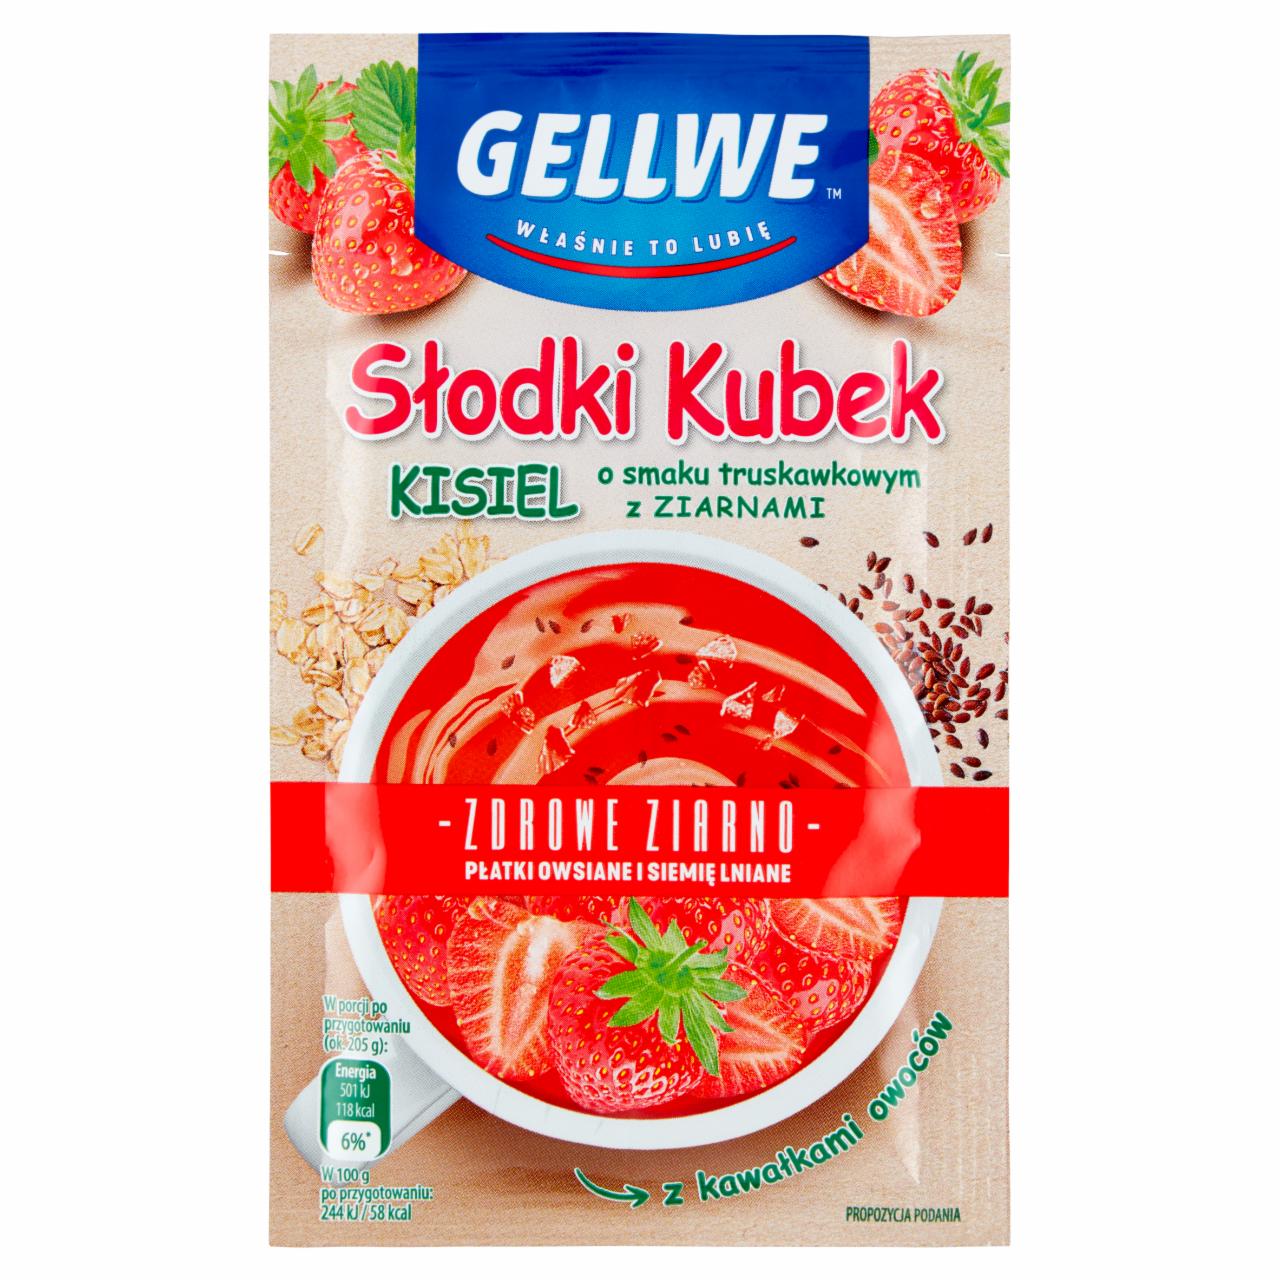 Zdjęcia - Gellwe Słodki Kubek Kisiel o smaku truskawkowym z ziarnami 30 g